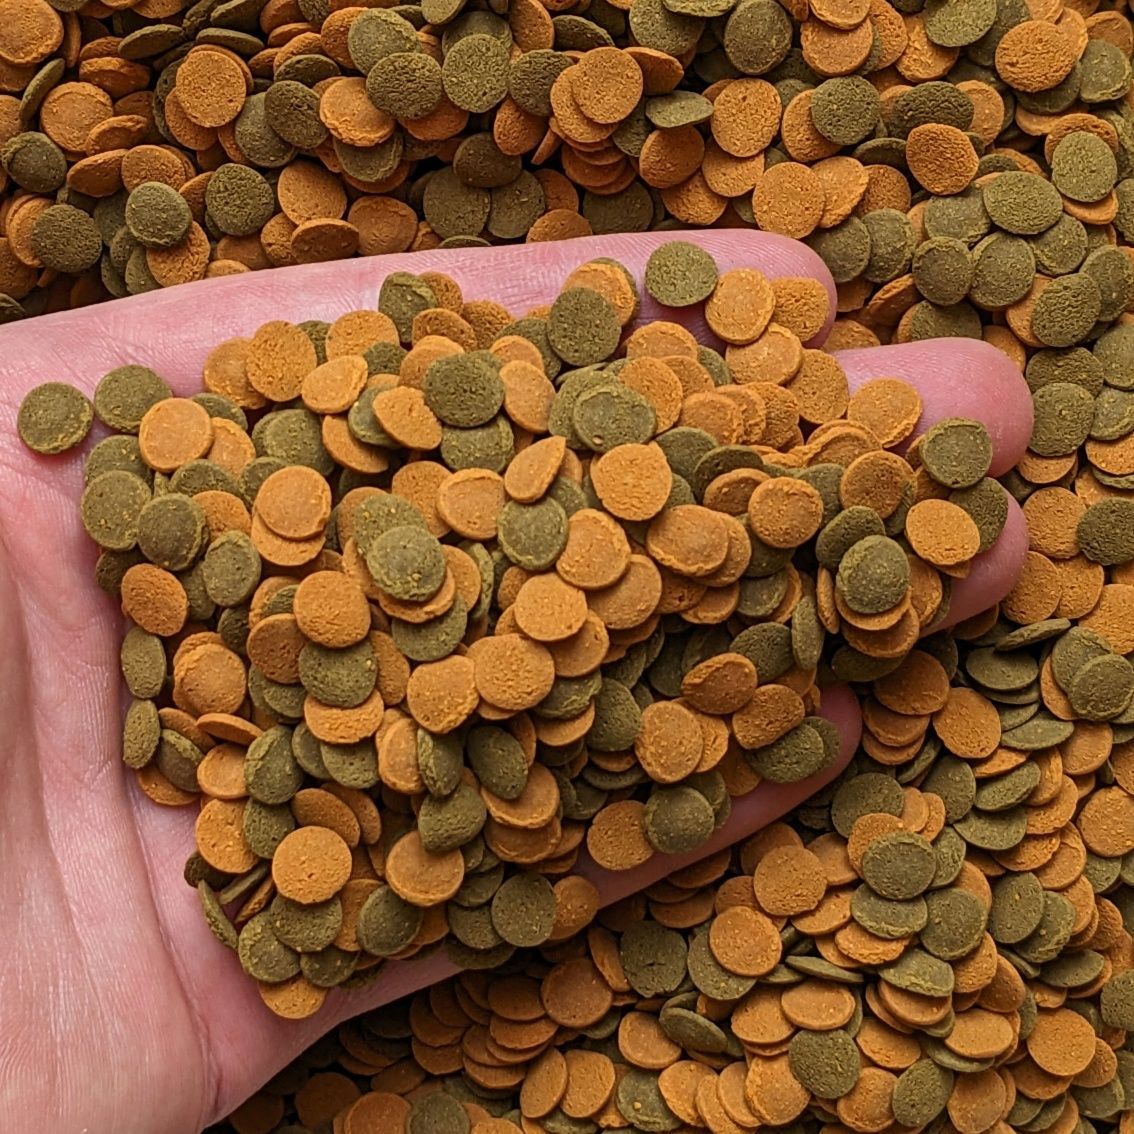 Tetra Wafer Mix 100г корм для акваріумних рибок таблетки для сомиків